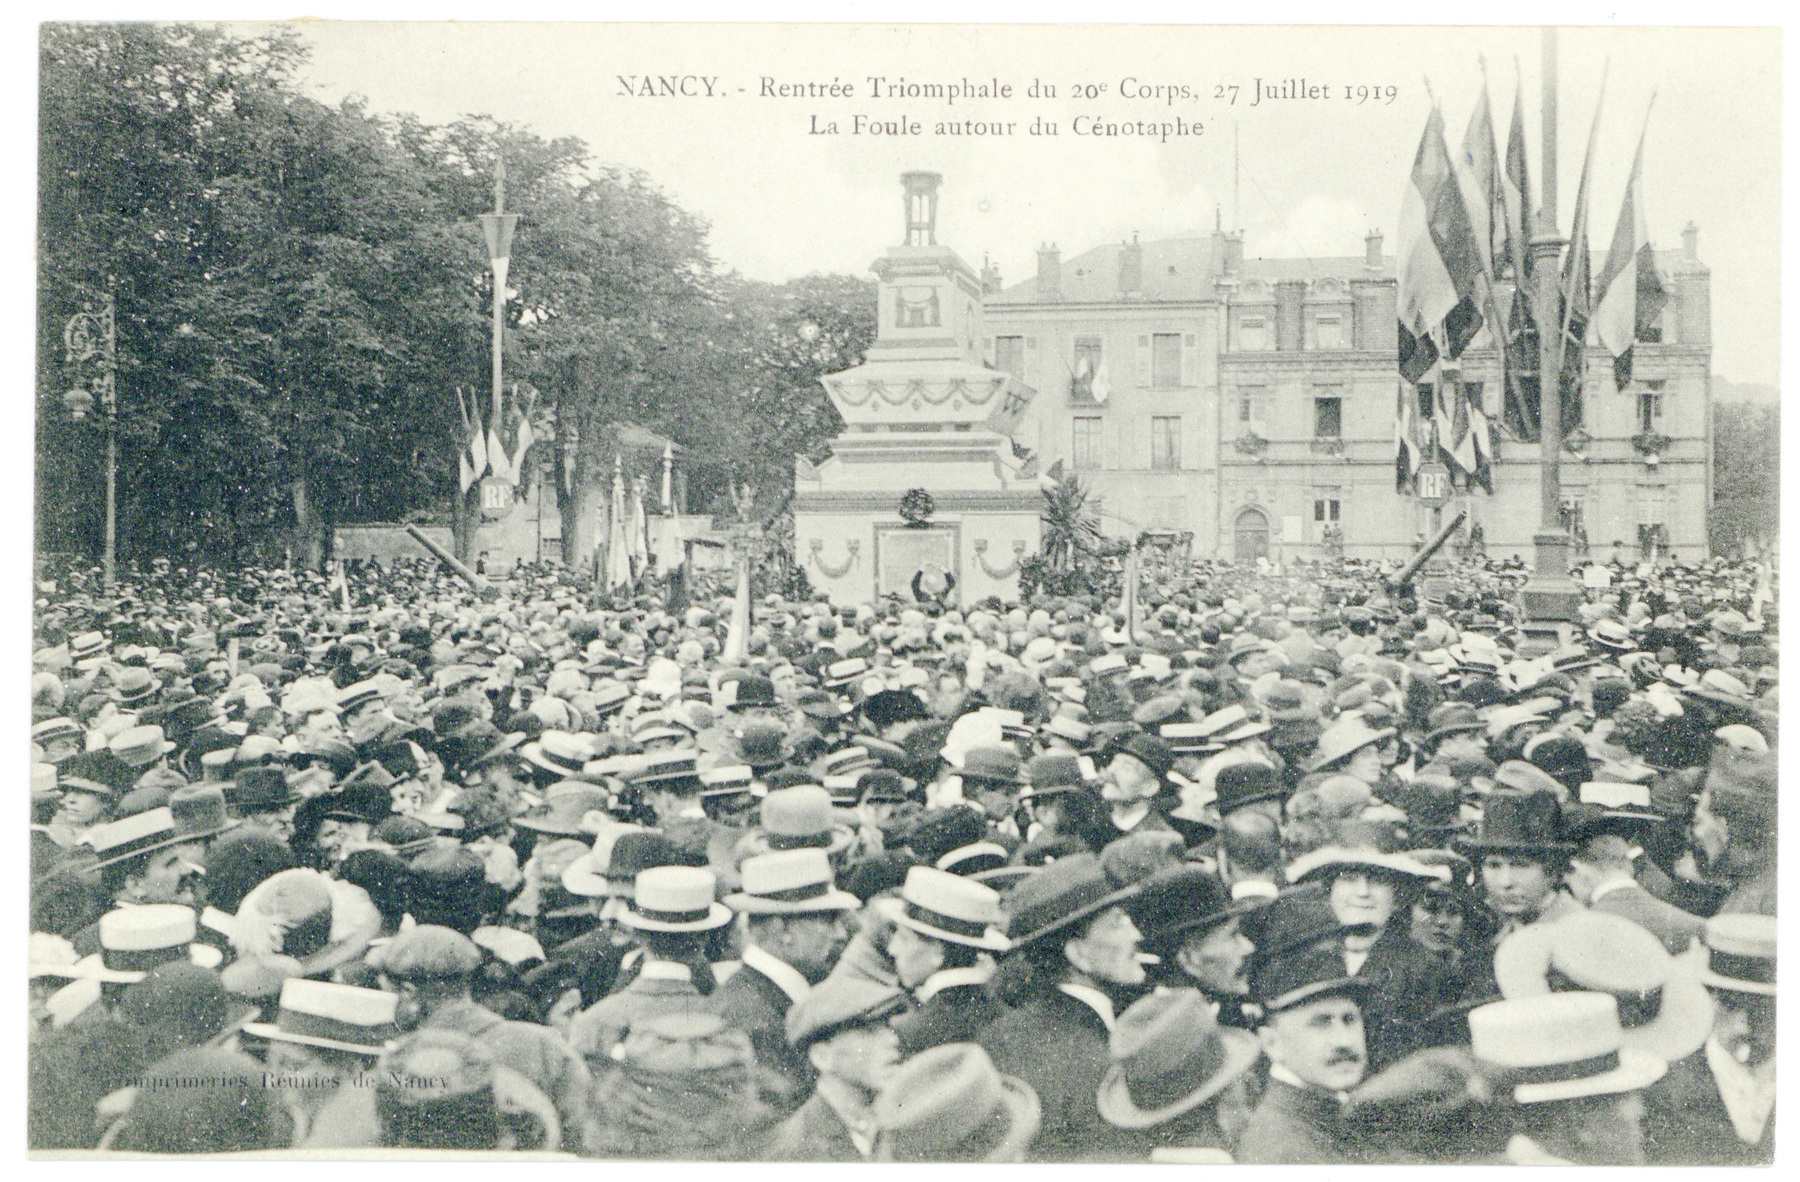 Contenu du La foule autour du cénotaphe. Nancy : rentrée triomphale du 20e corps, 27 juillet 1919